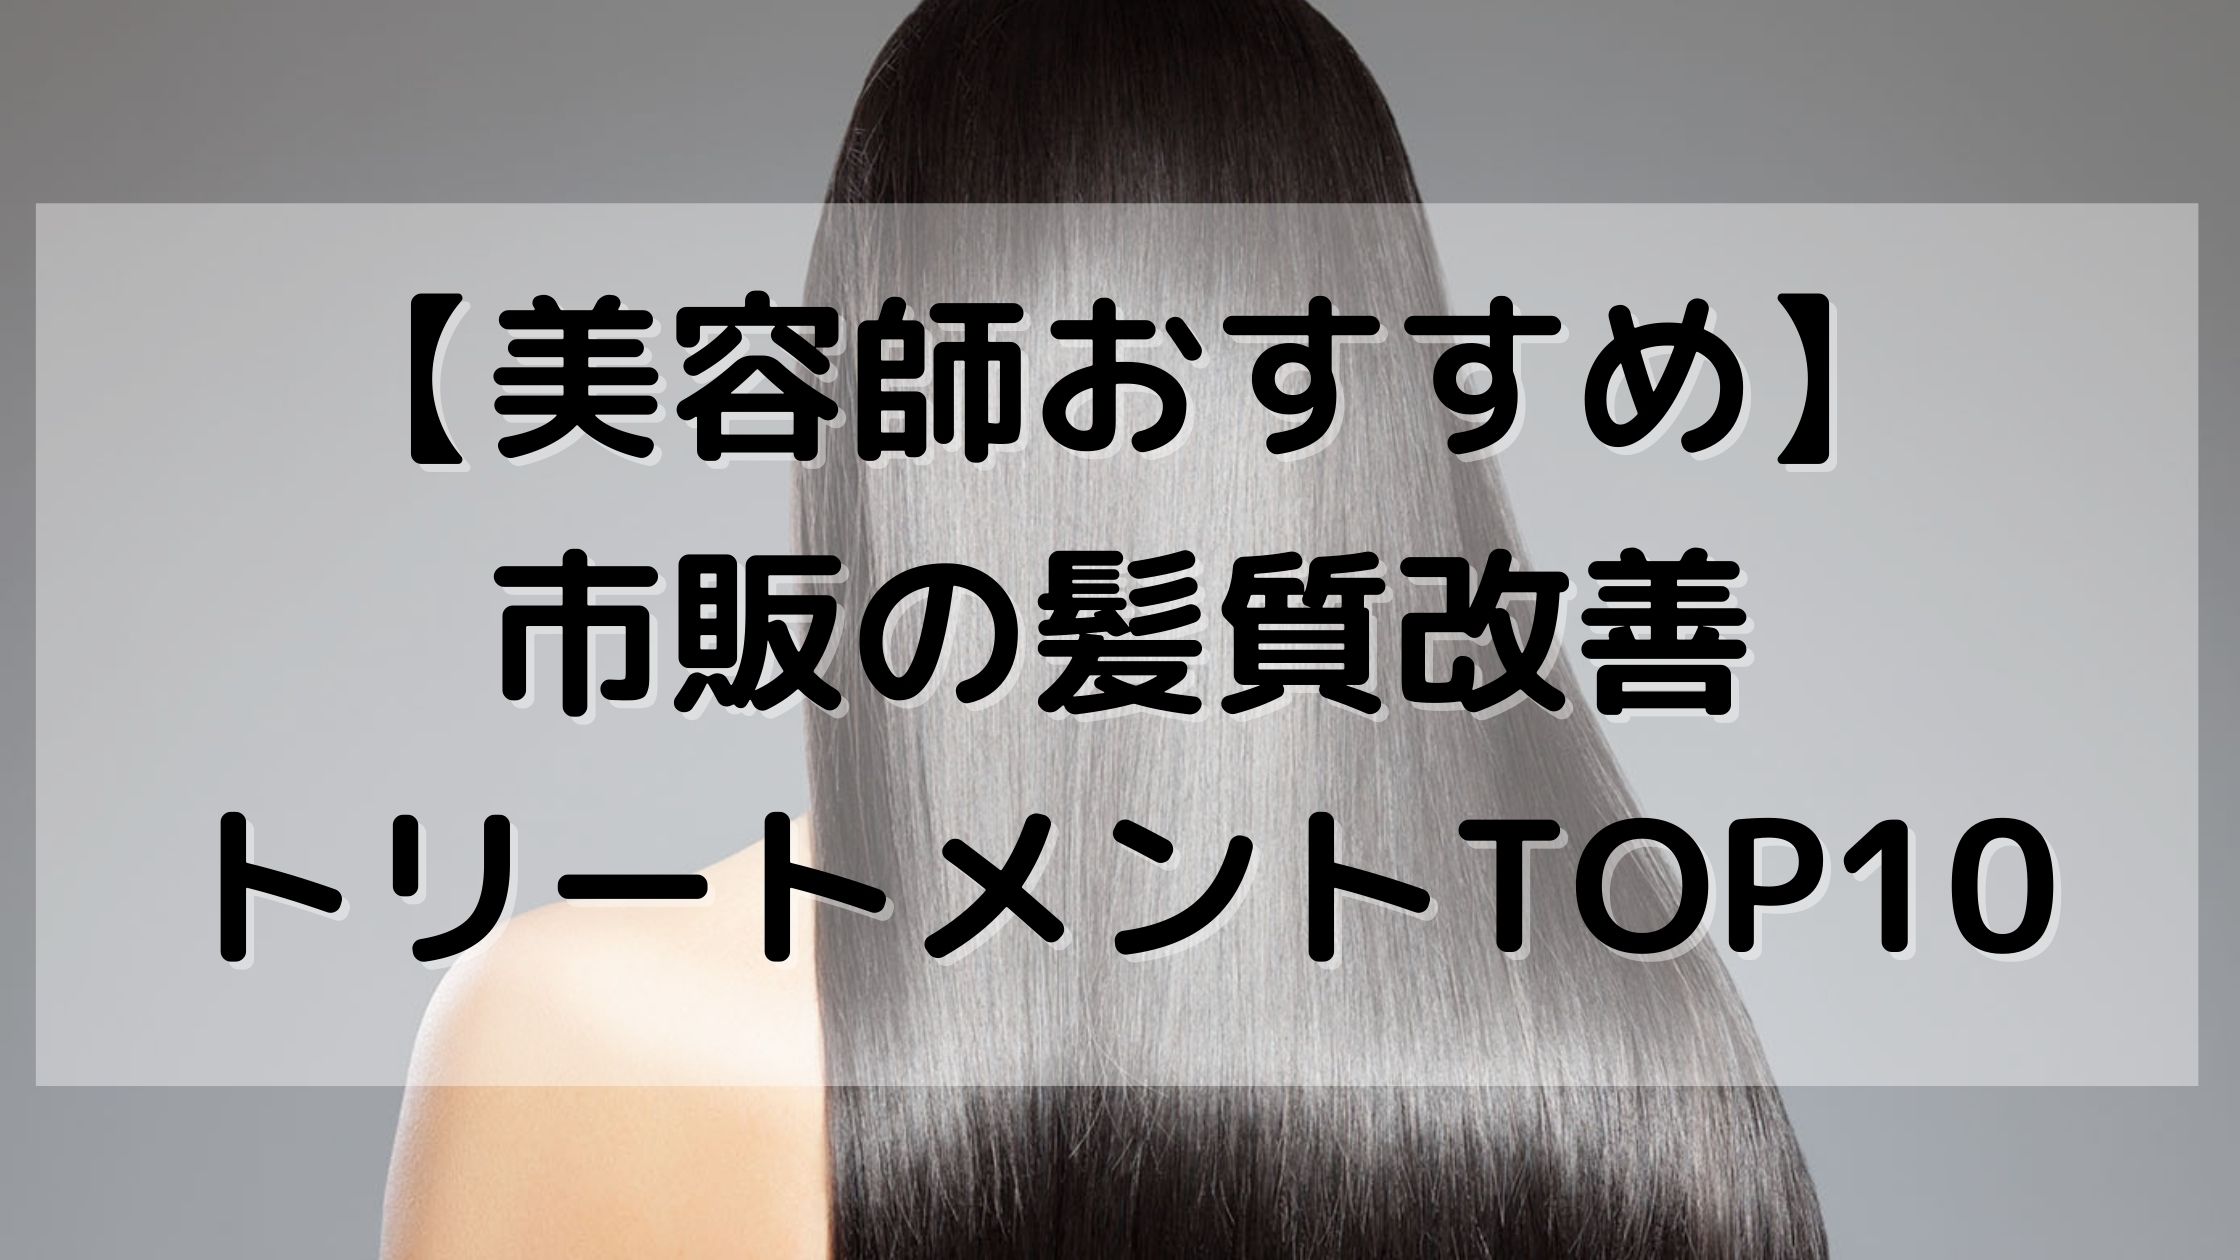 美容師おすすめ 市販の髪質改善トリートメント10選 22年最新 中村美髪研究所